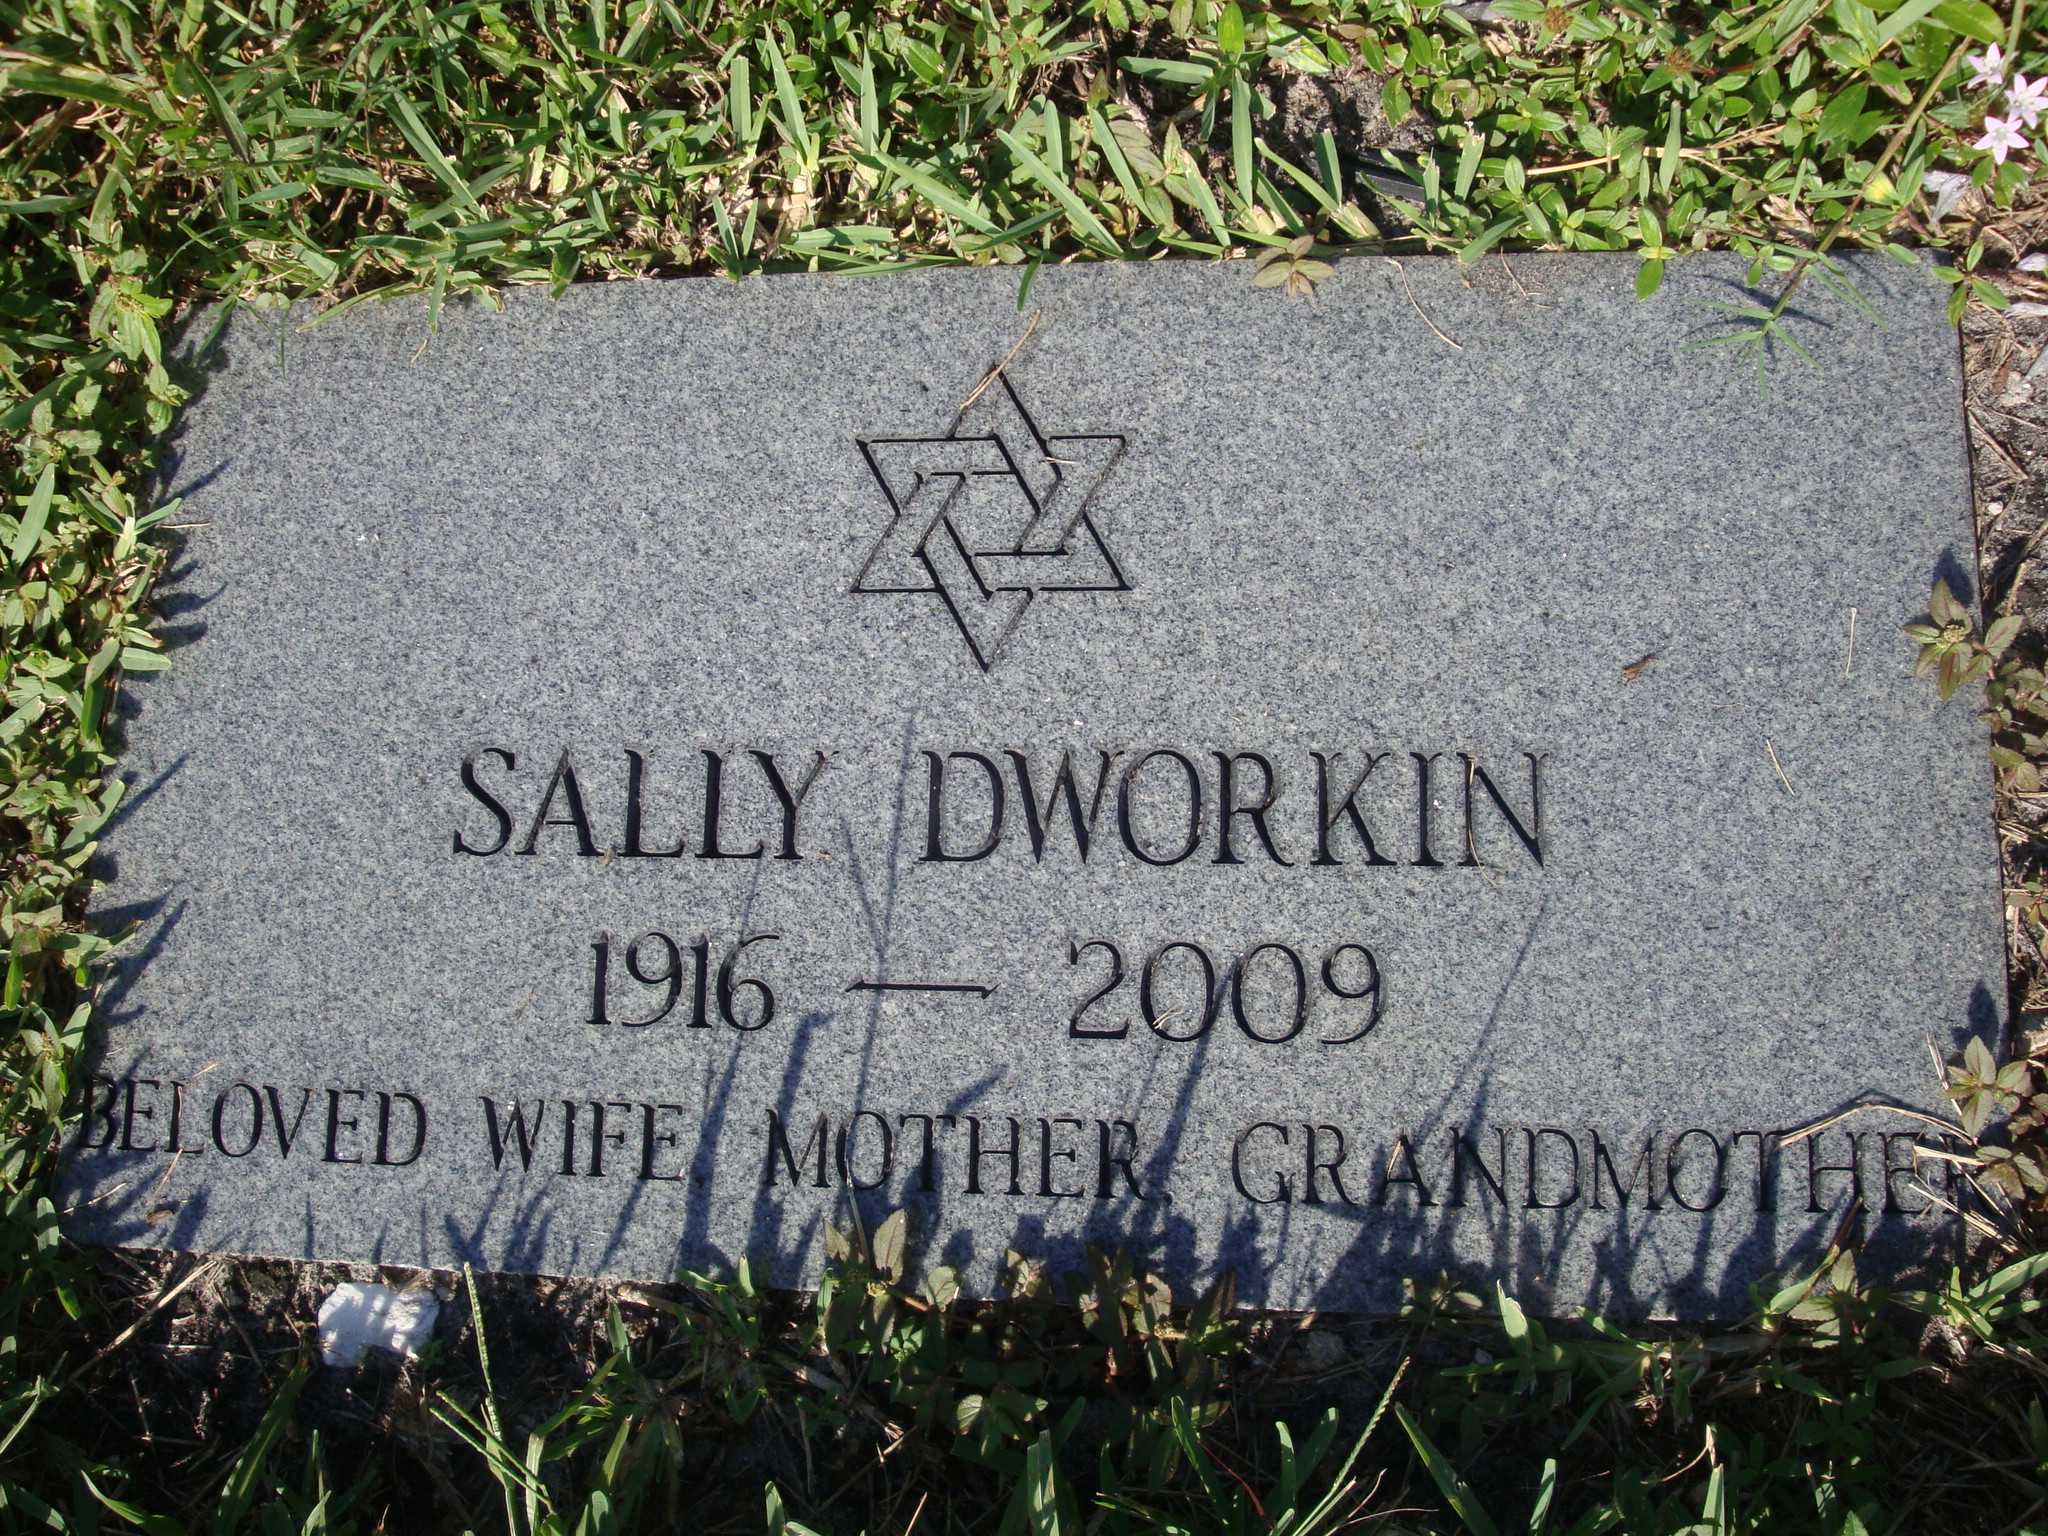 Sally Dworkin